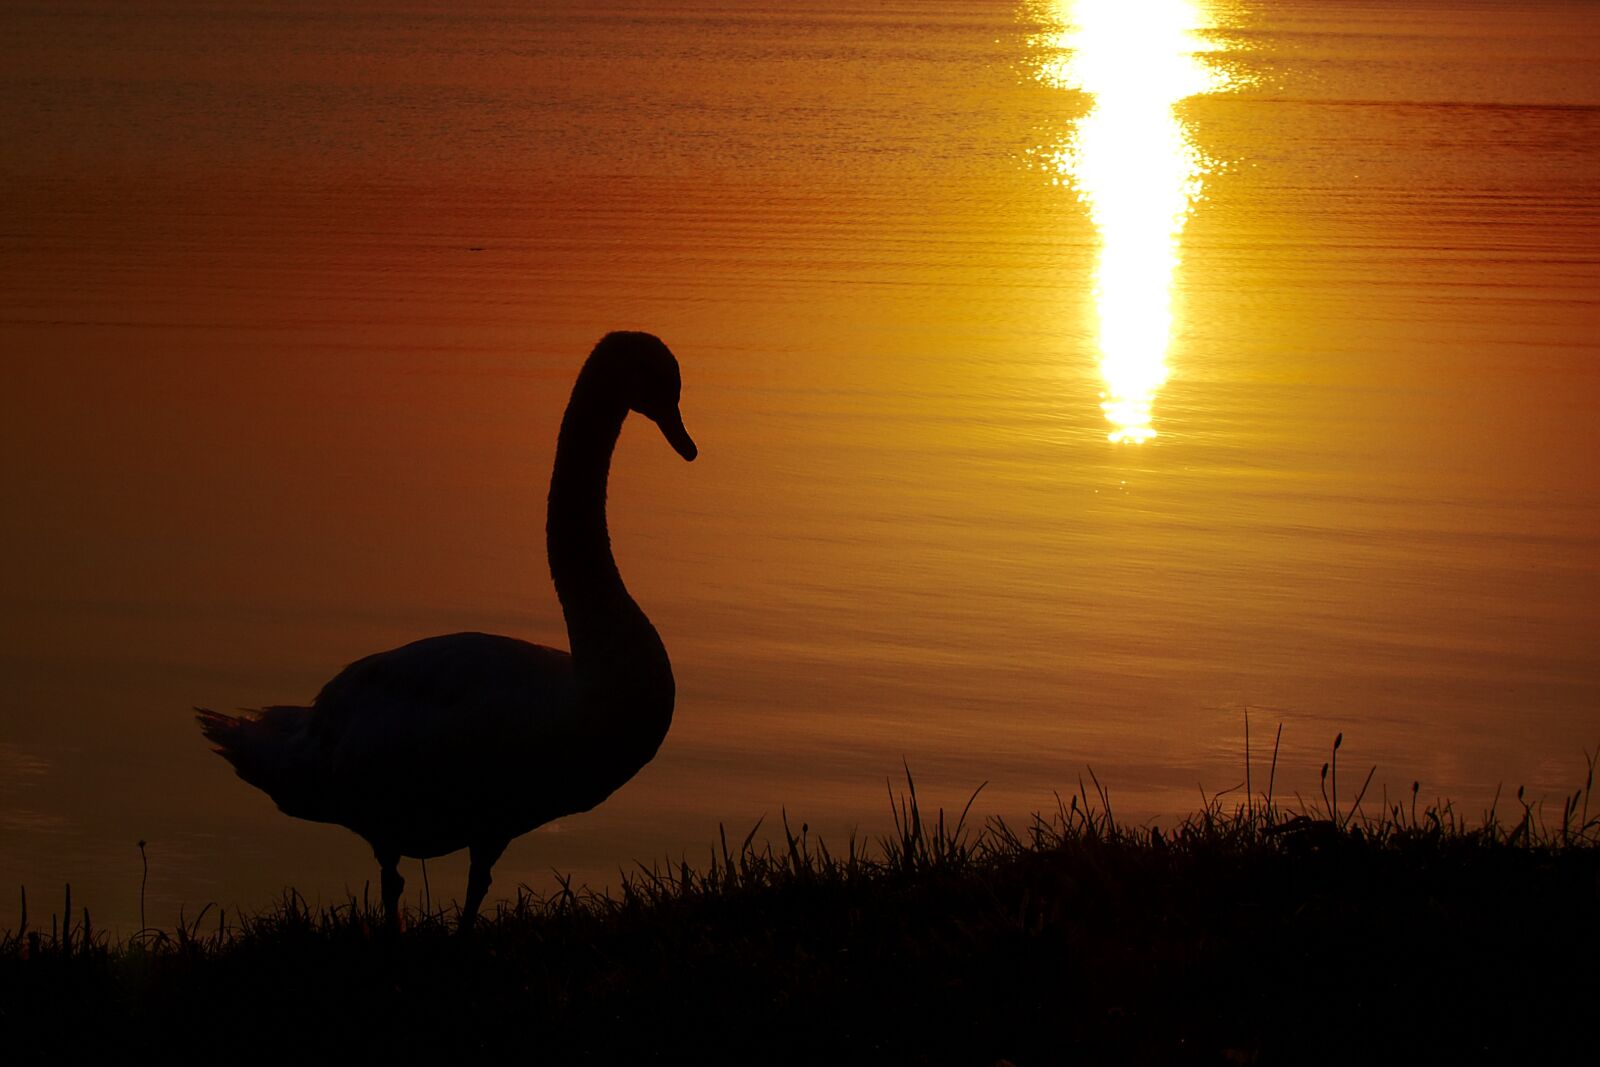 Canon PowerShot S95 sample photo. Nature, sunset, dusk photography